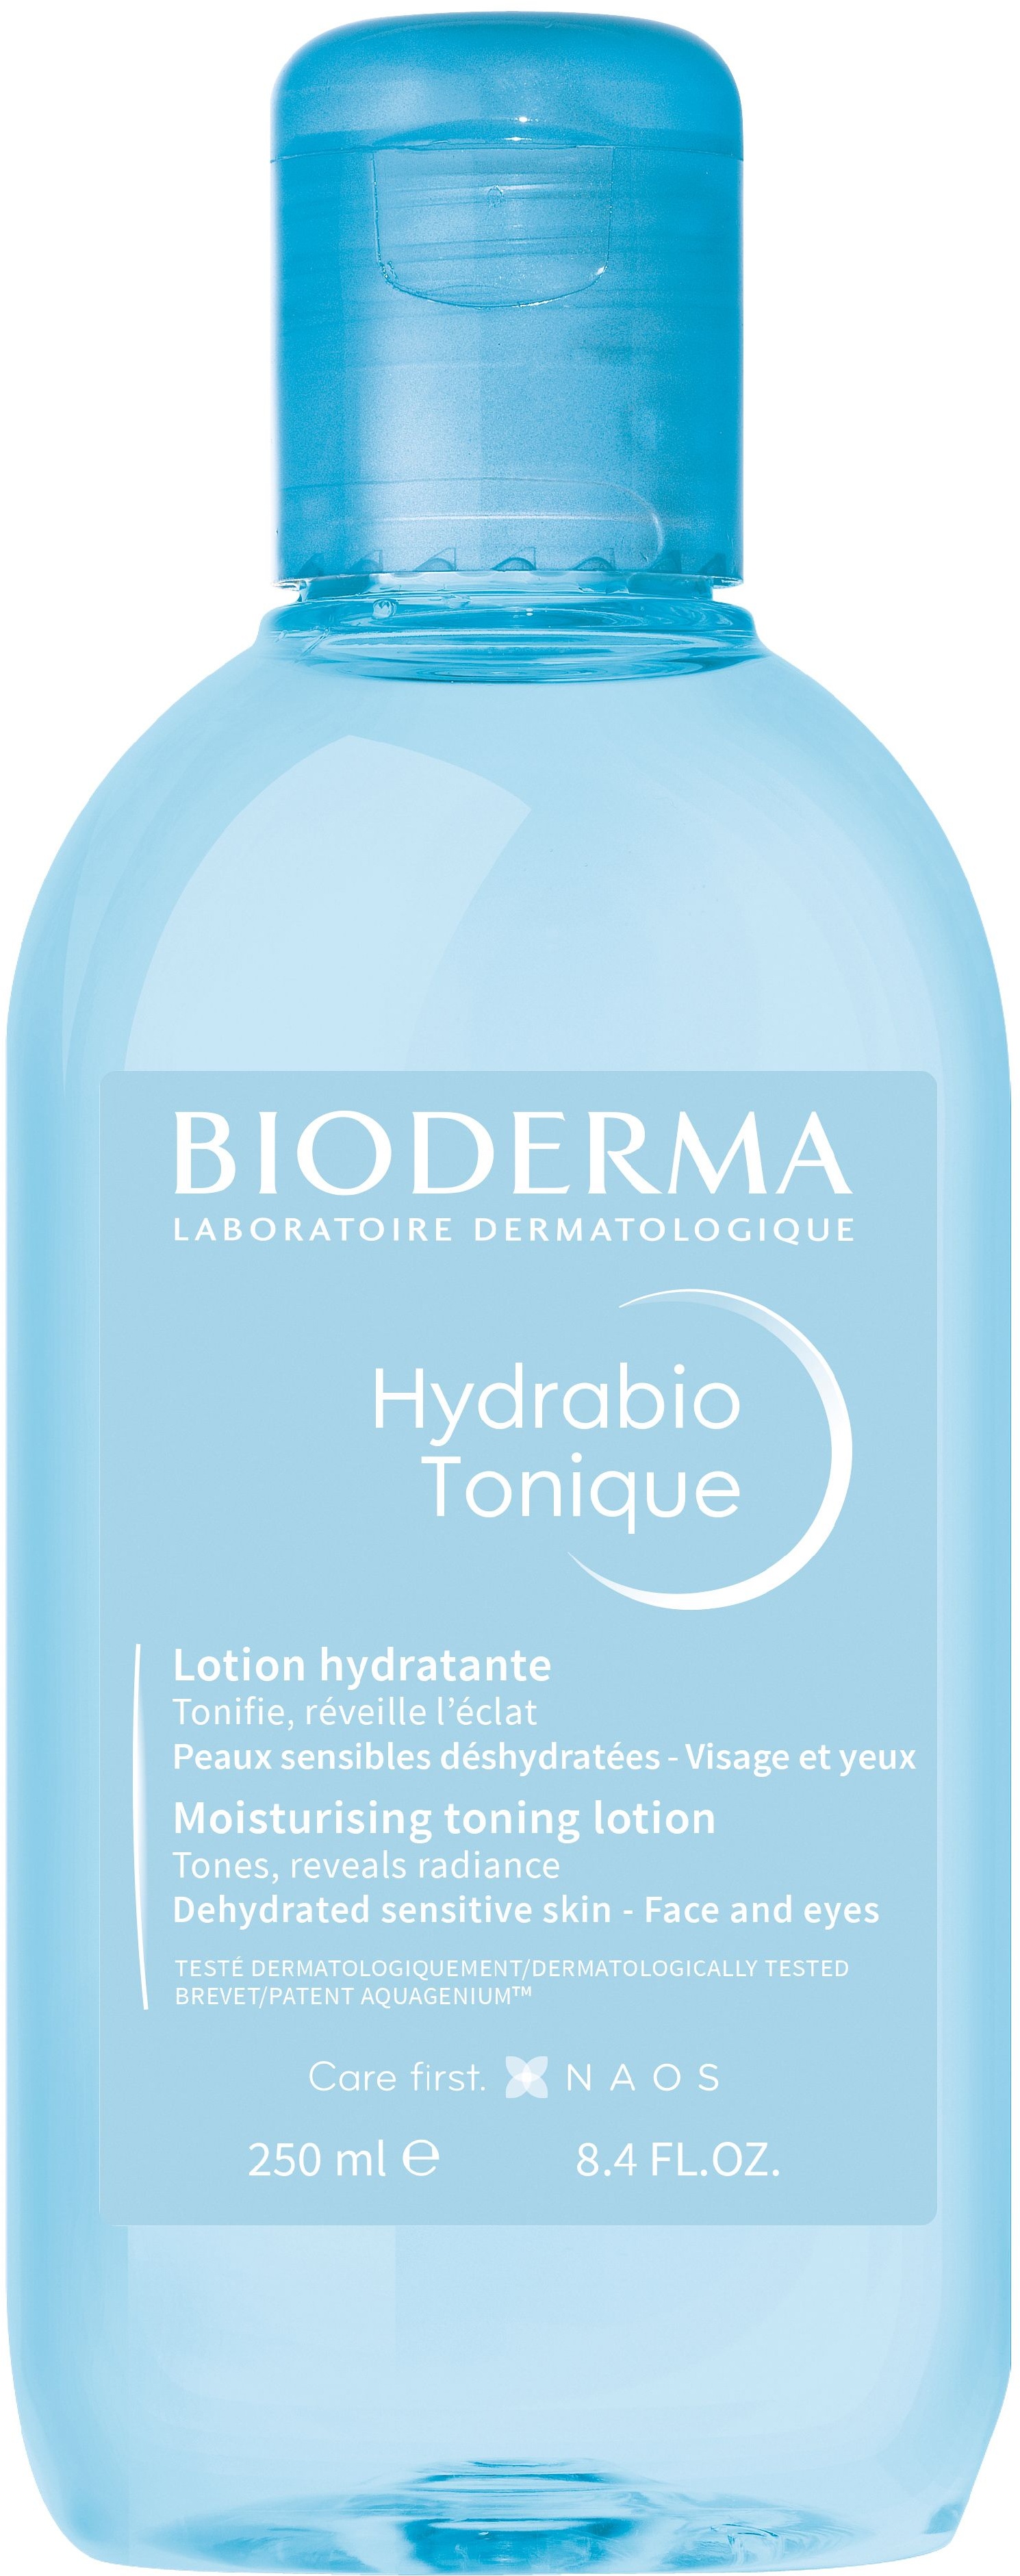 Bioderma Hydrabio Tonique Feuchtigkeitsspendendes und tonisierendes Gesichtswasser Lotion 250 ml Unisex 250 ml Lotion